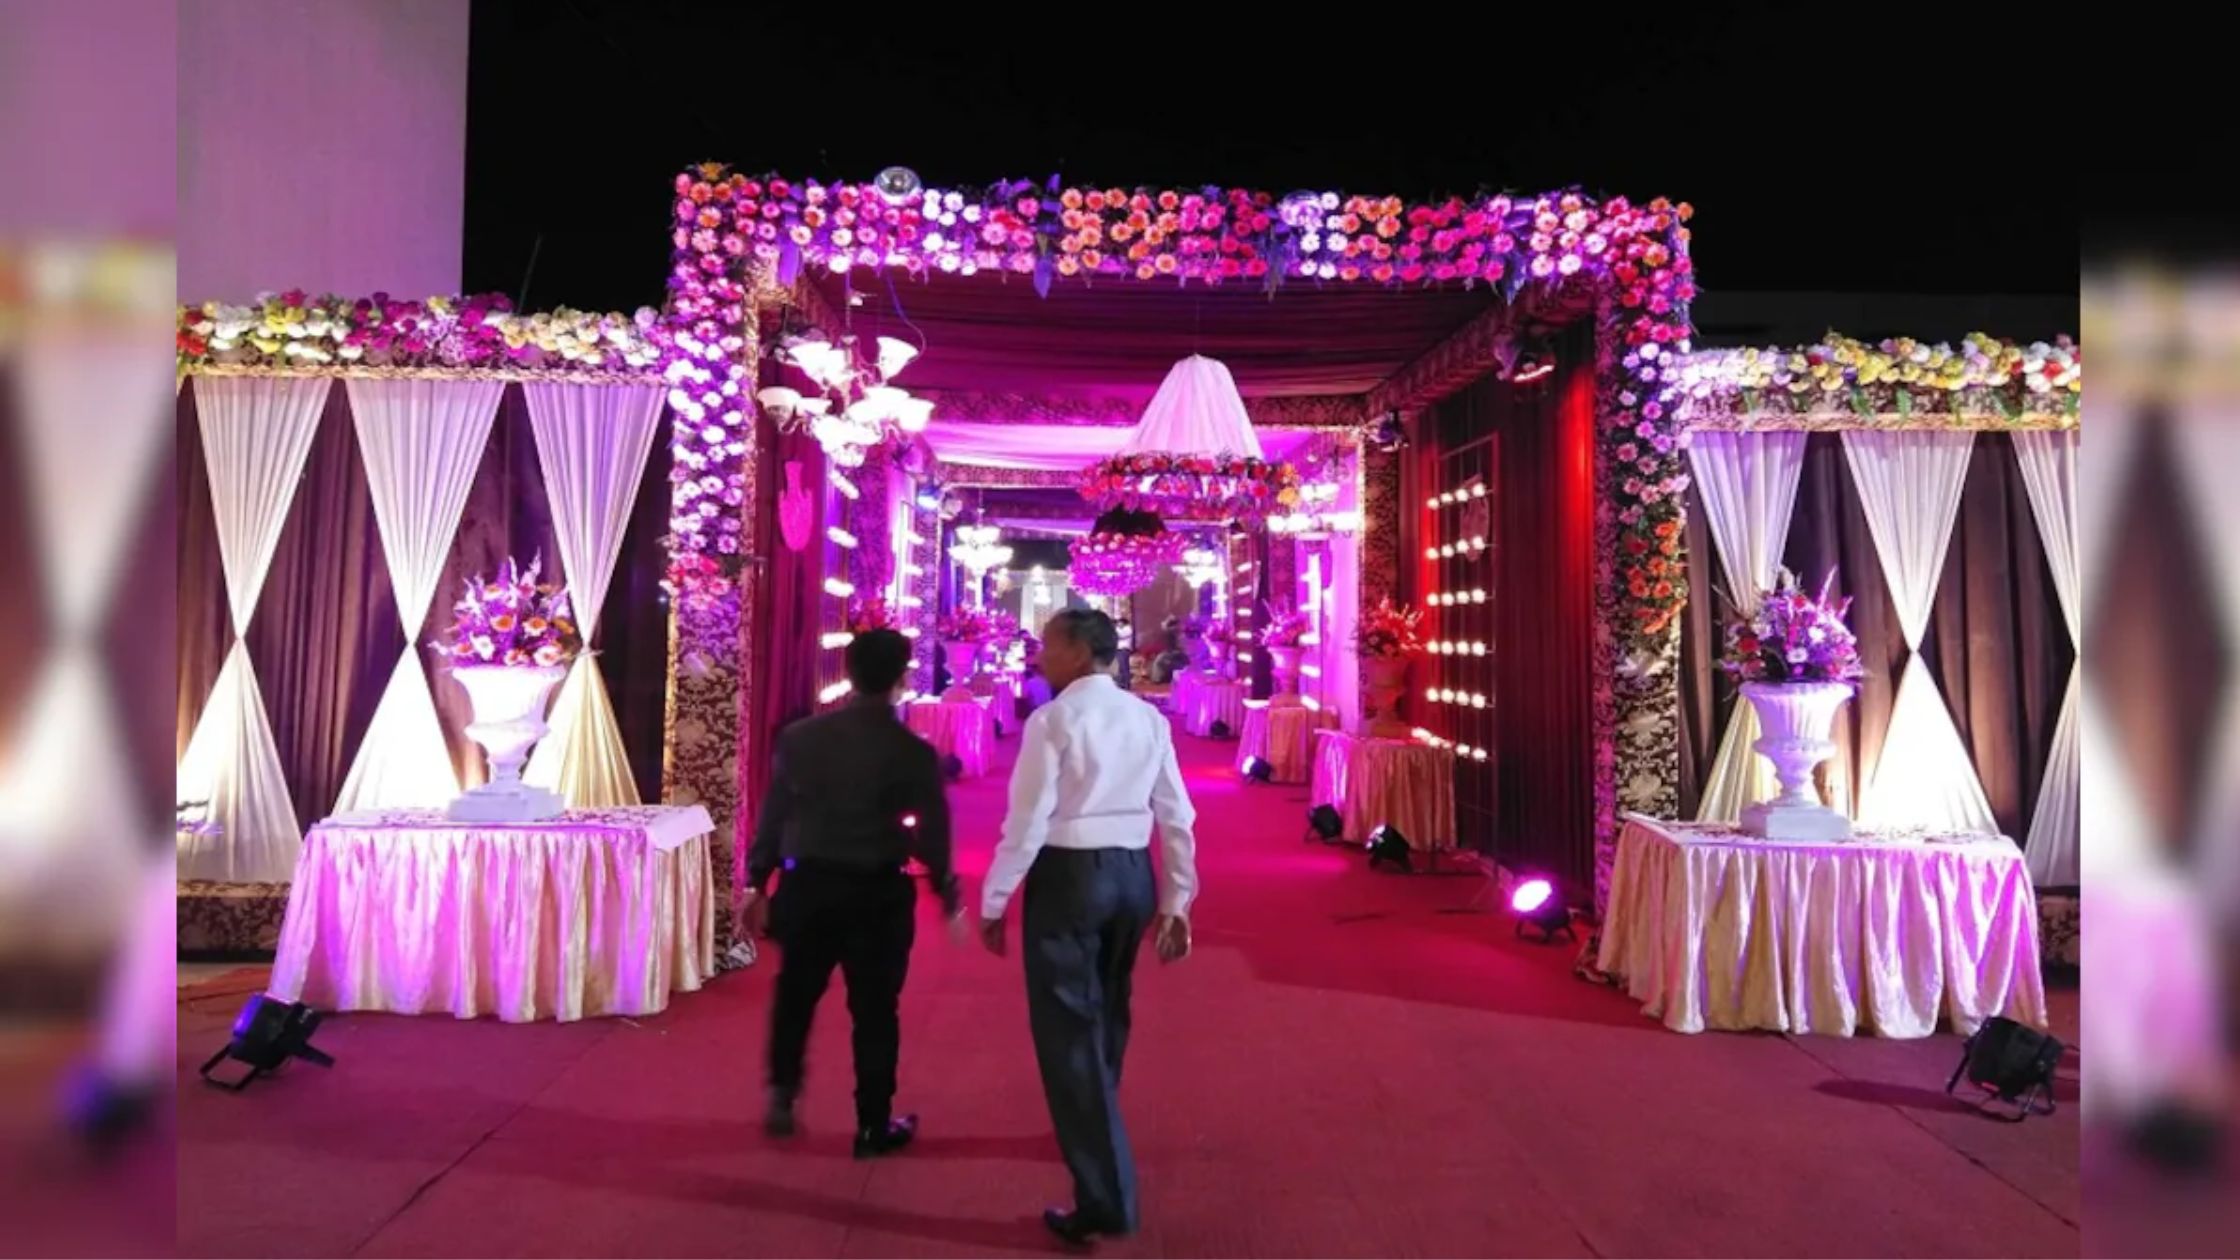 मैरिज हॉल का बिजनेस कैसे करें? | Banquet Hall Business in Hindi |